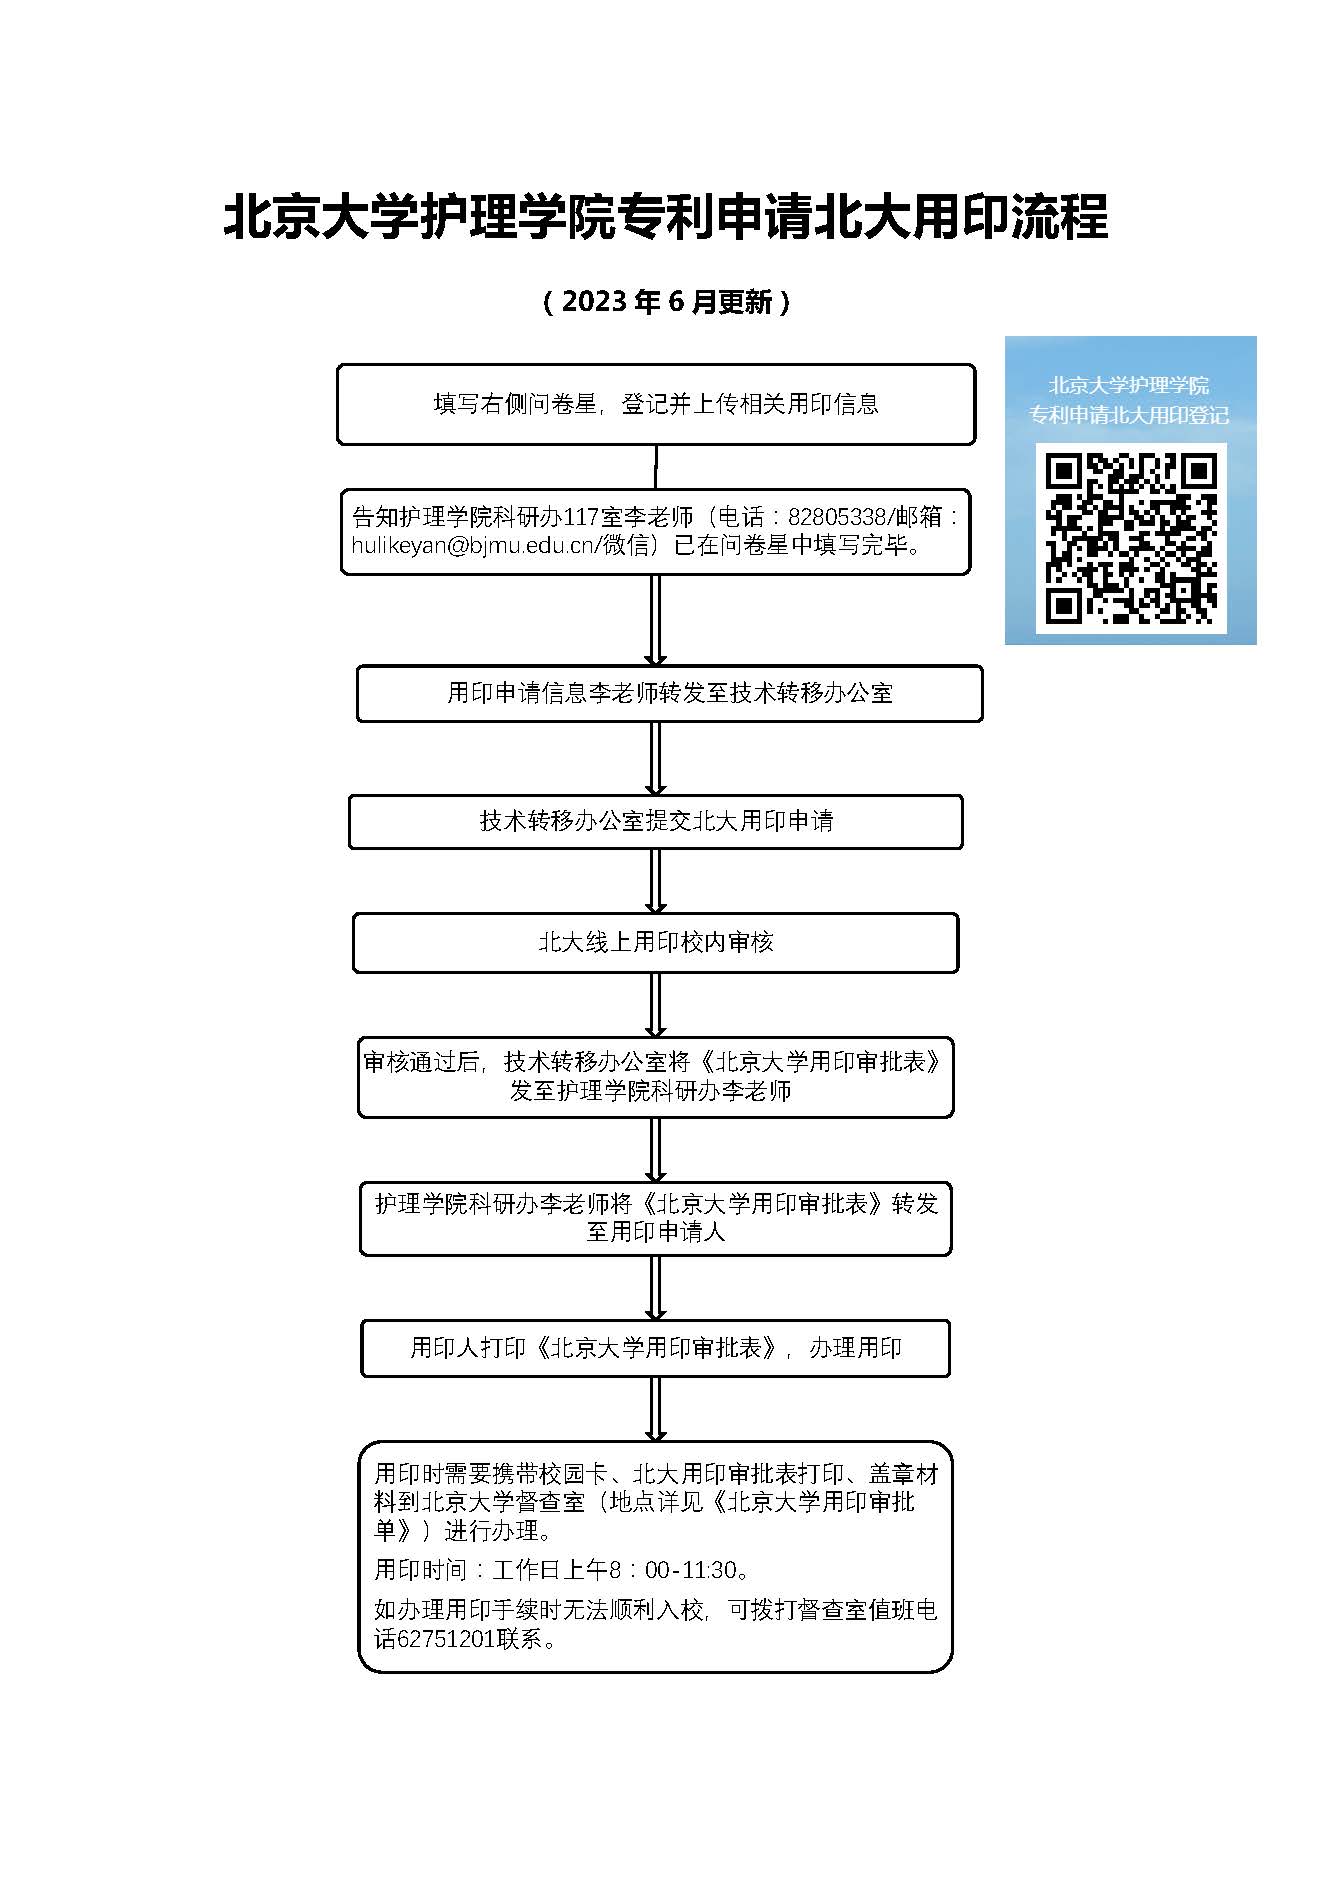 新葡的京集团35222vip专利申请北大用印流程.jpg